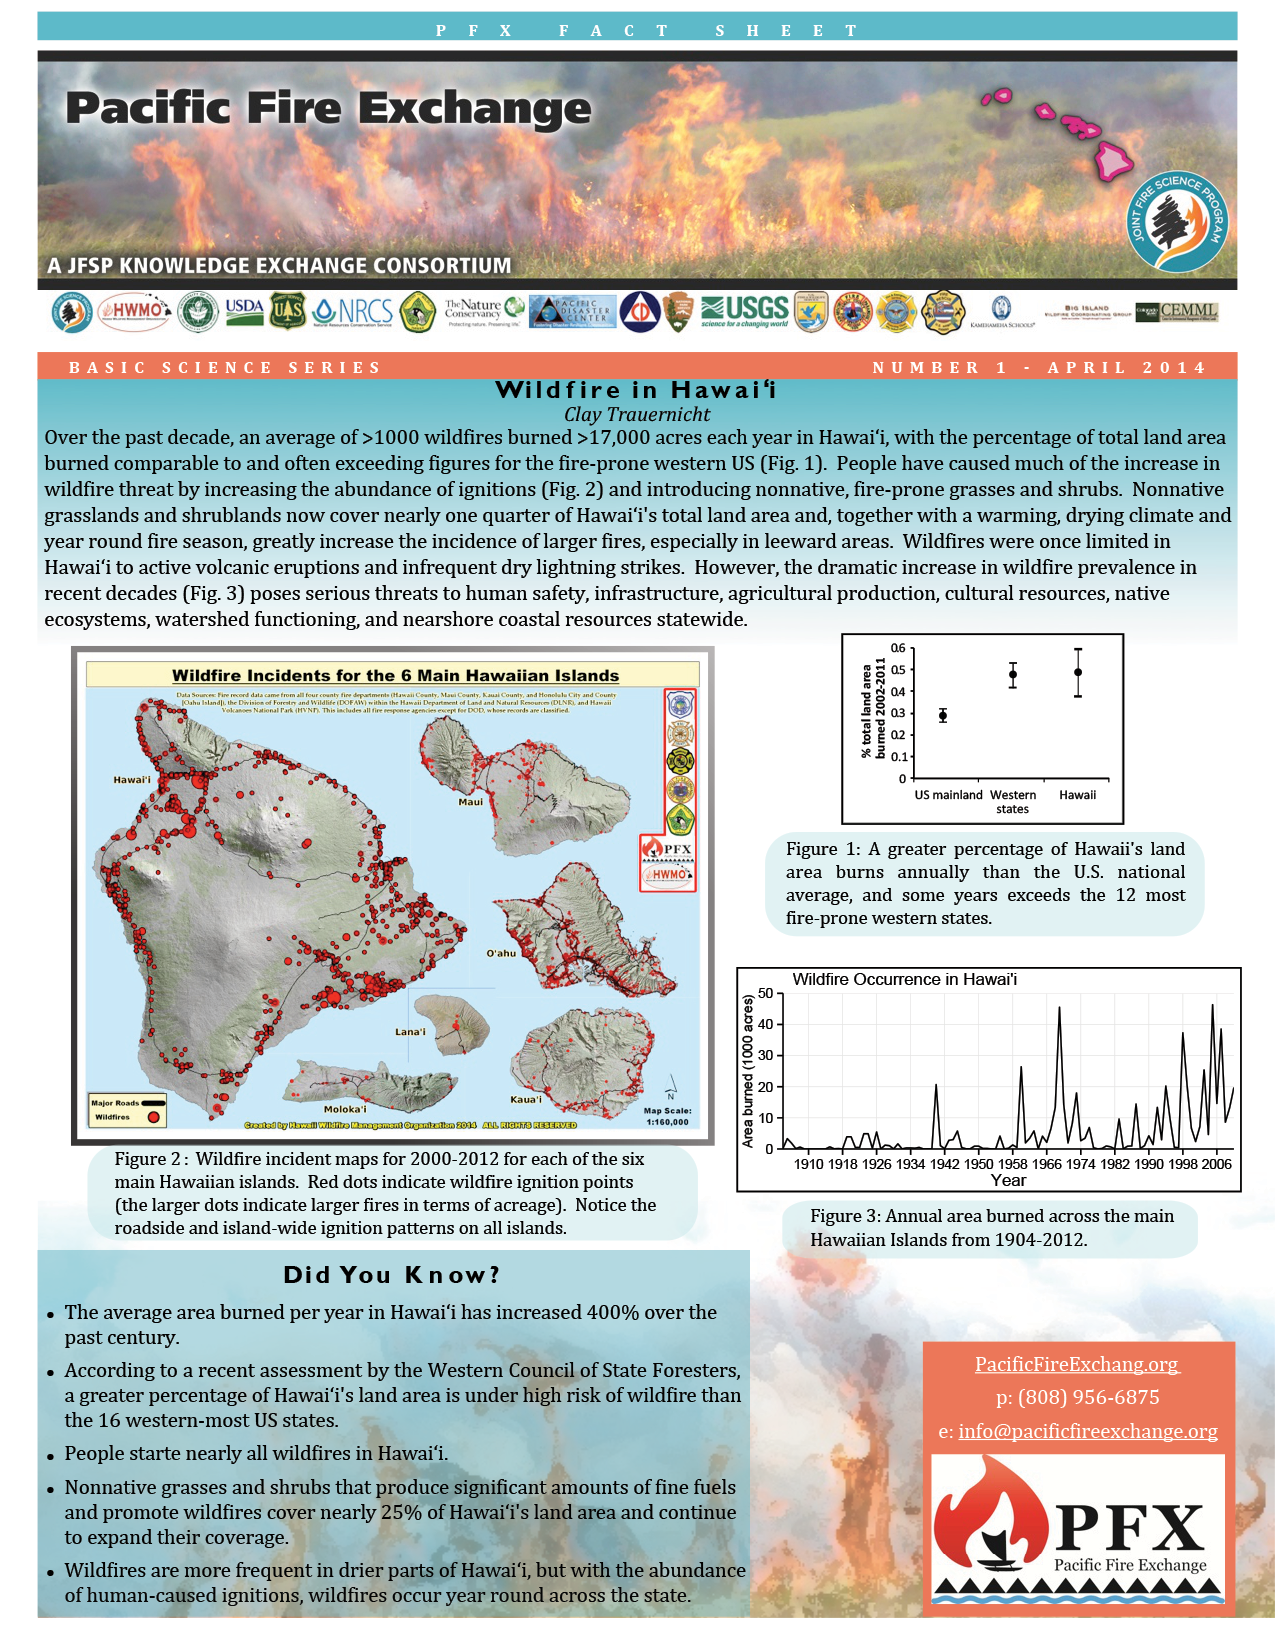 WildfireinHawaiifactsheet-PacificFireExchange2014-1